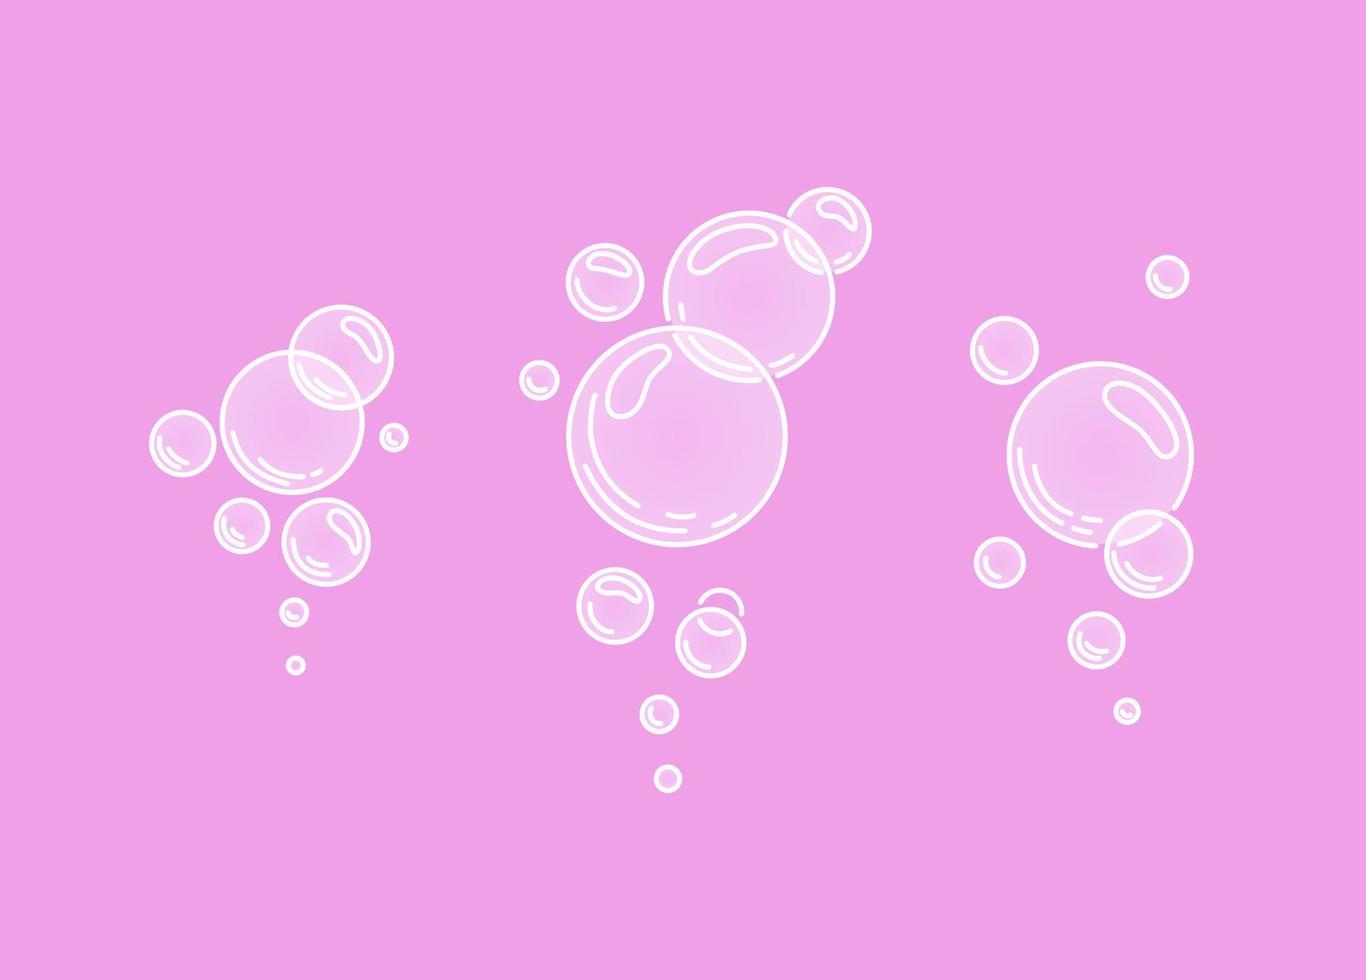 bolle d'aria frizzante o bolle d'acqua su sfondo rosa. scintillii frizzanti. gomma. illustrazione del fumetto di vettore. illustrazione vettoriale